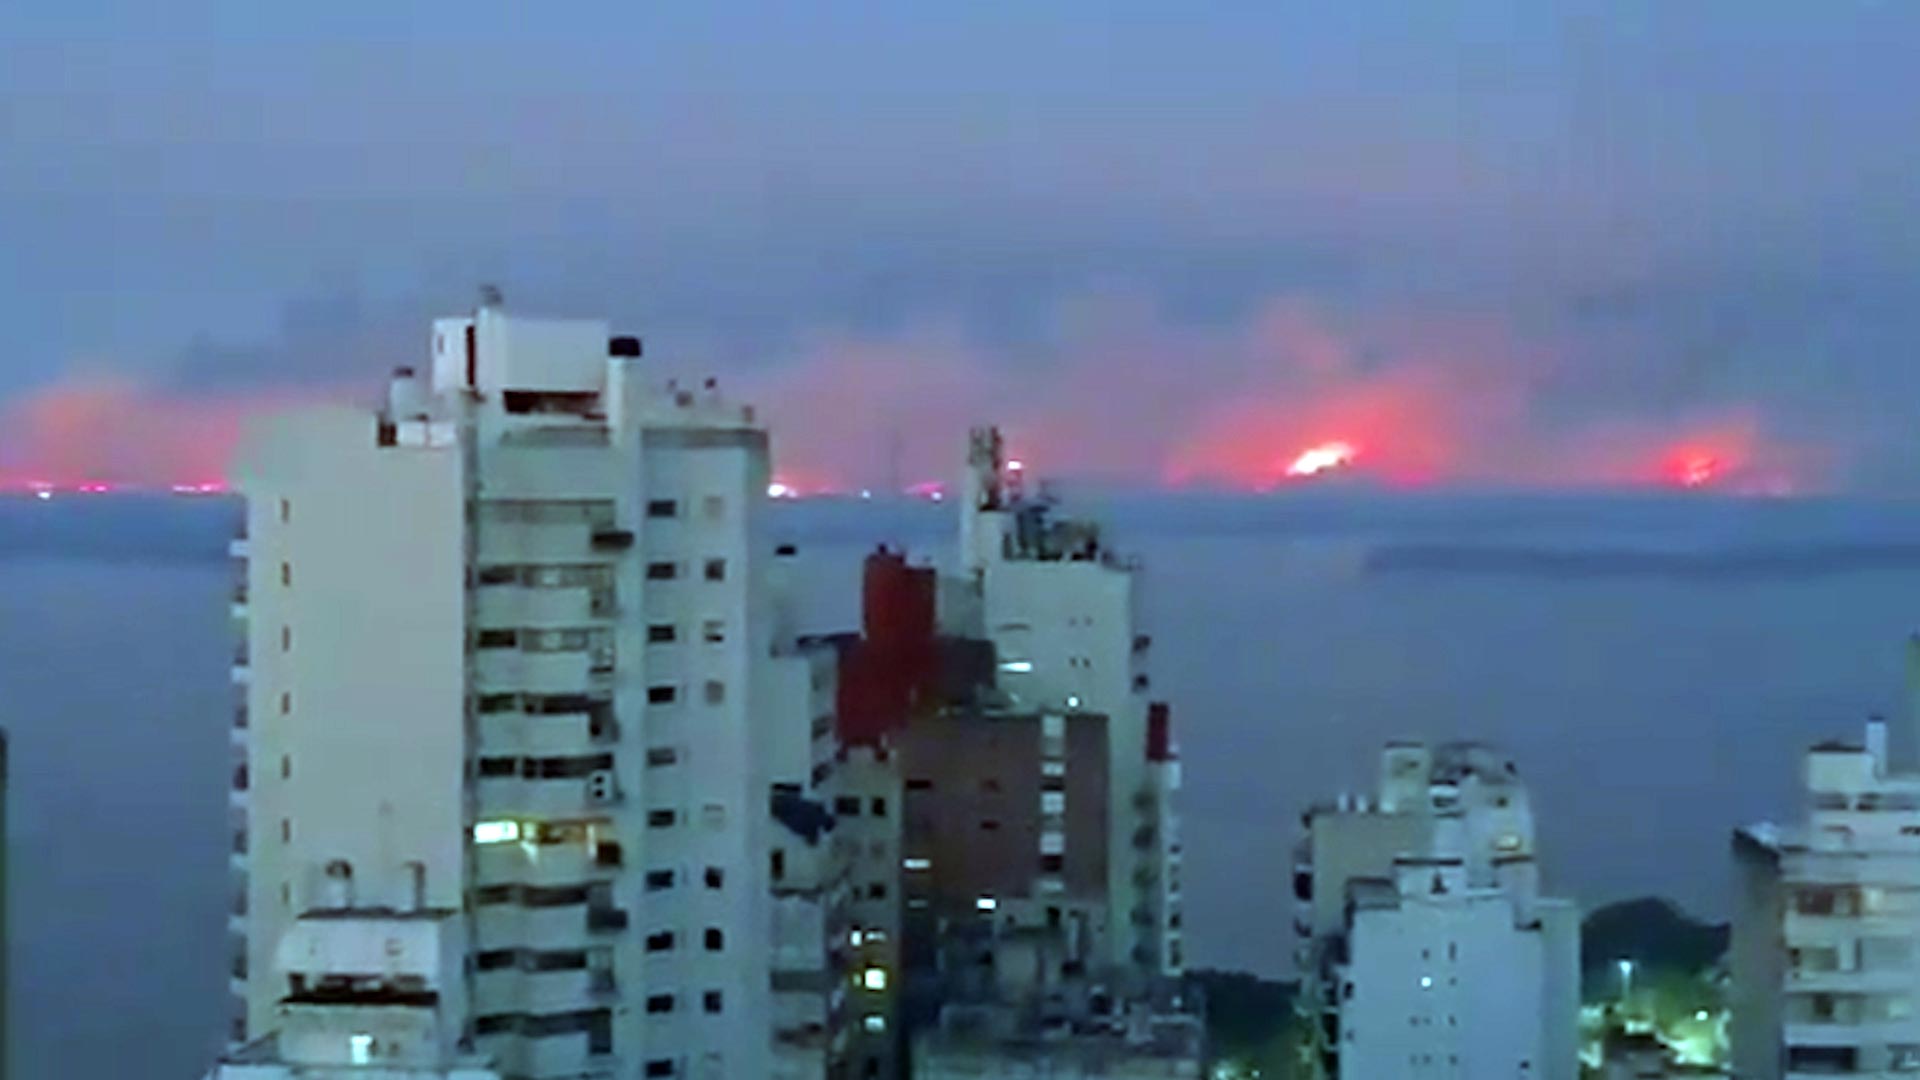 El humo de los incendios invade la ciudad de Rosario.